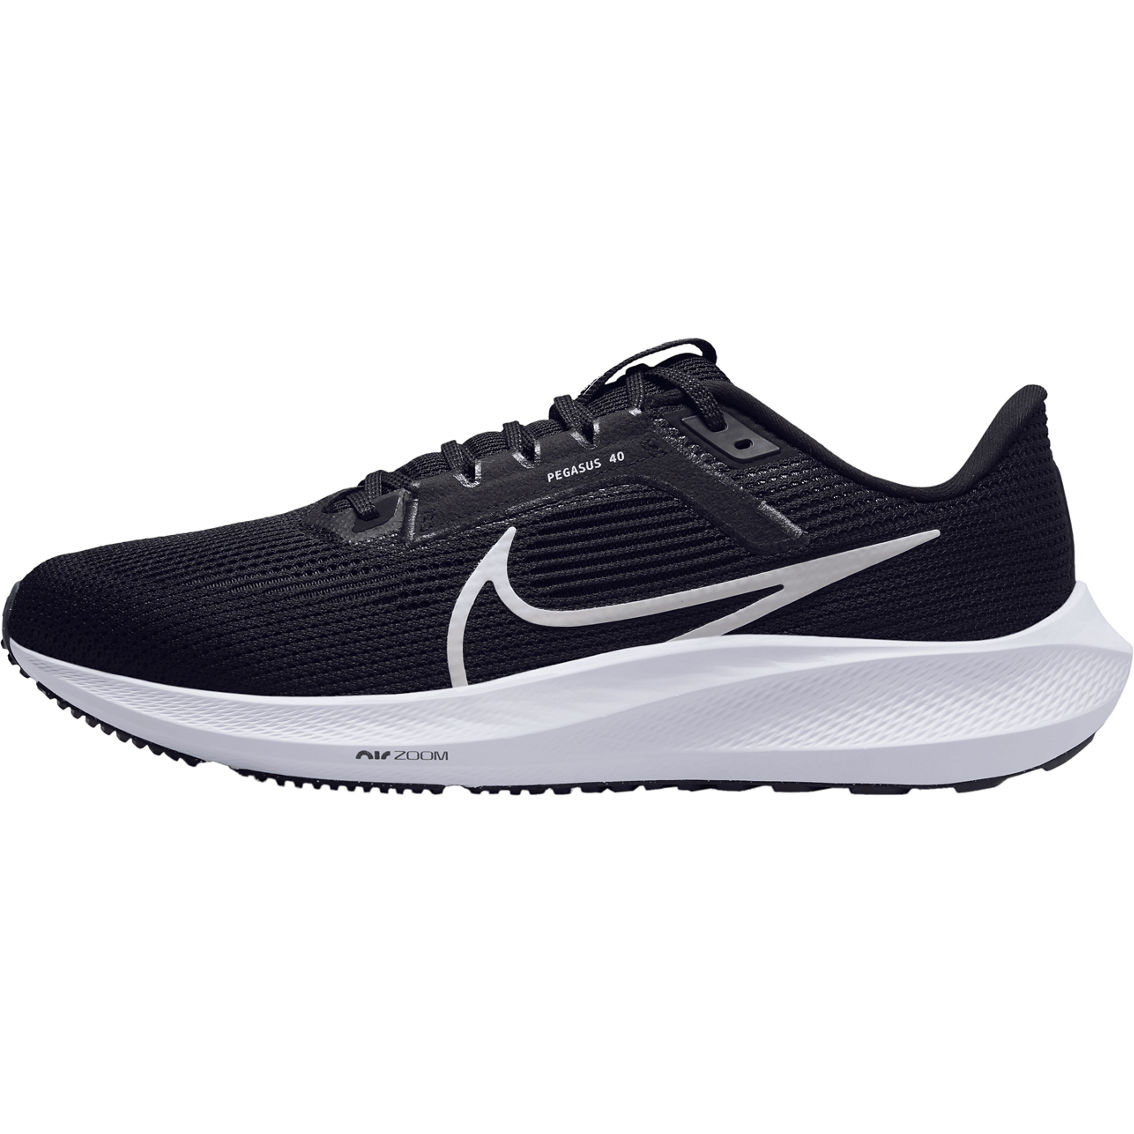 Nike Men's Zoom Pegasus 40 Running Shoes - Image 2 of 10